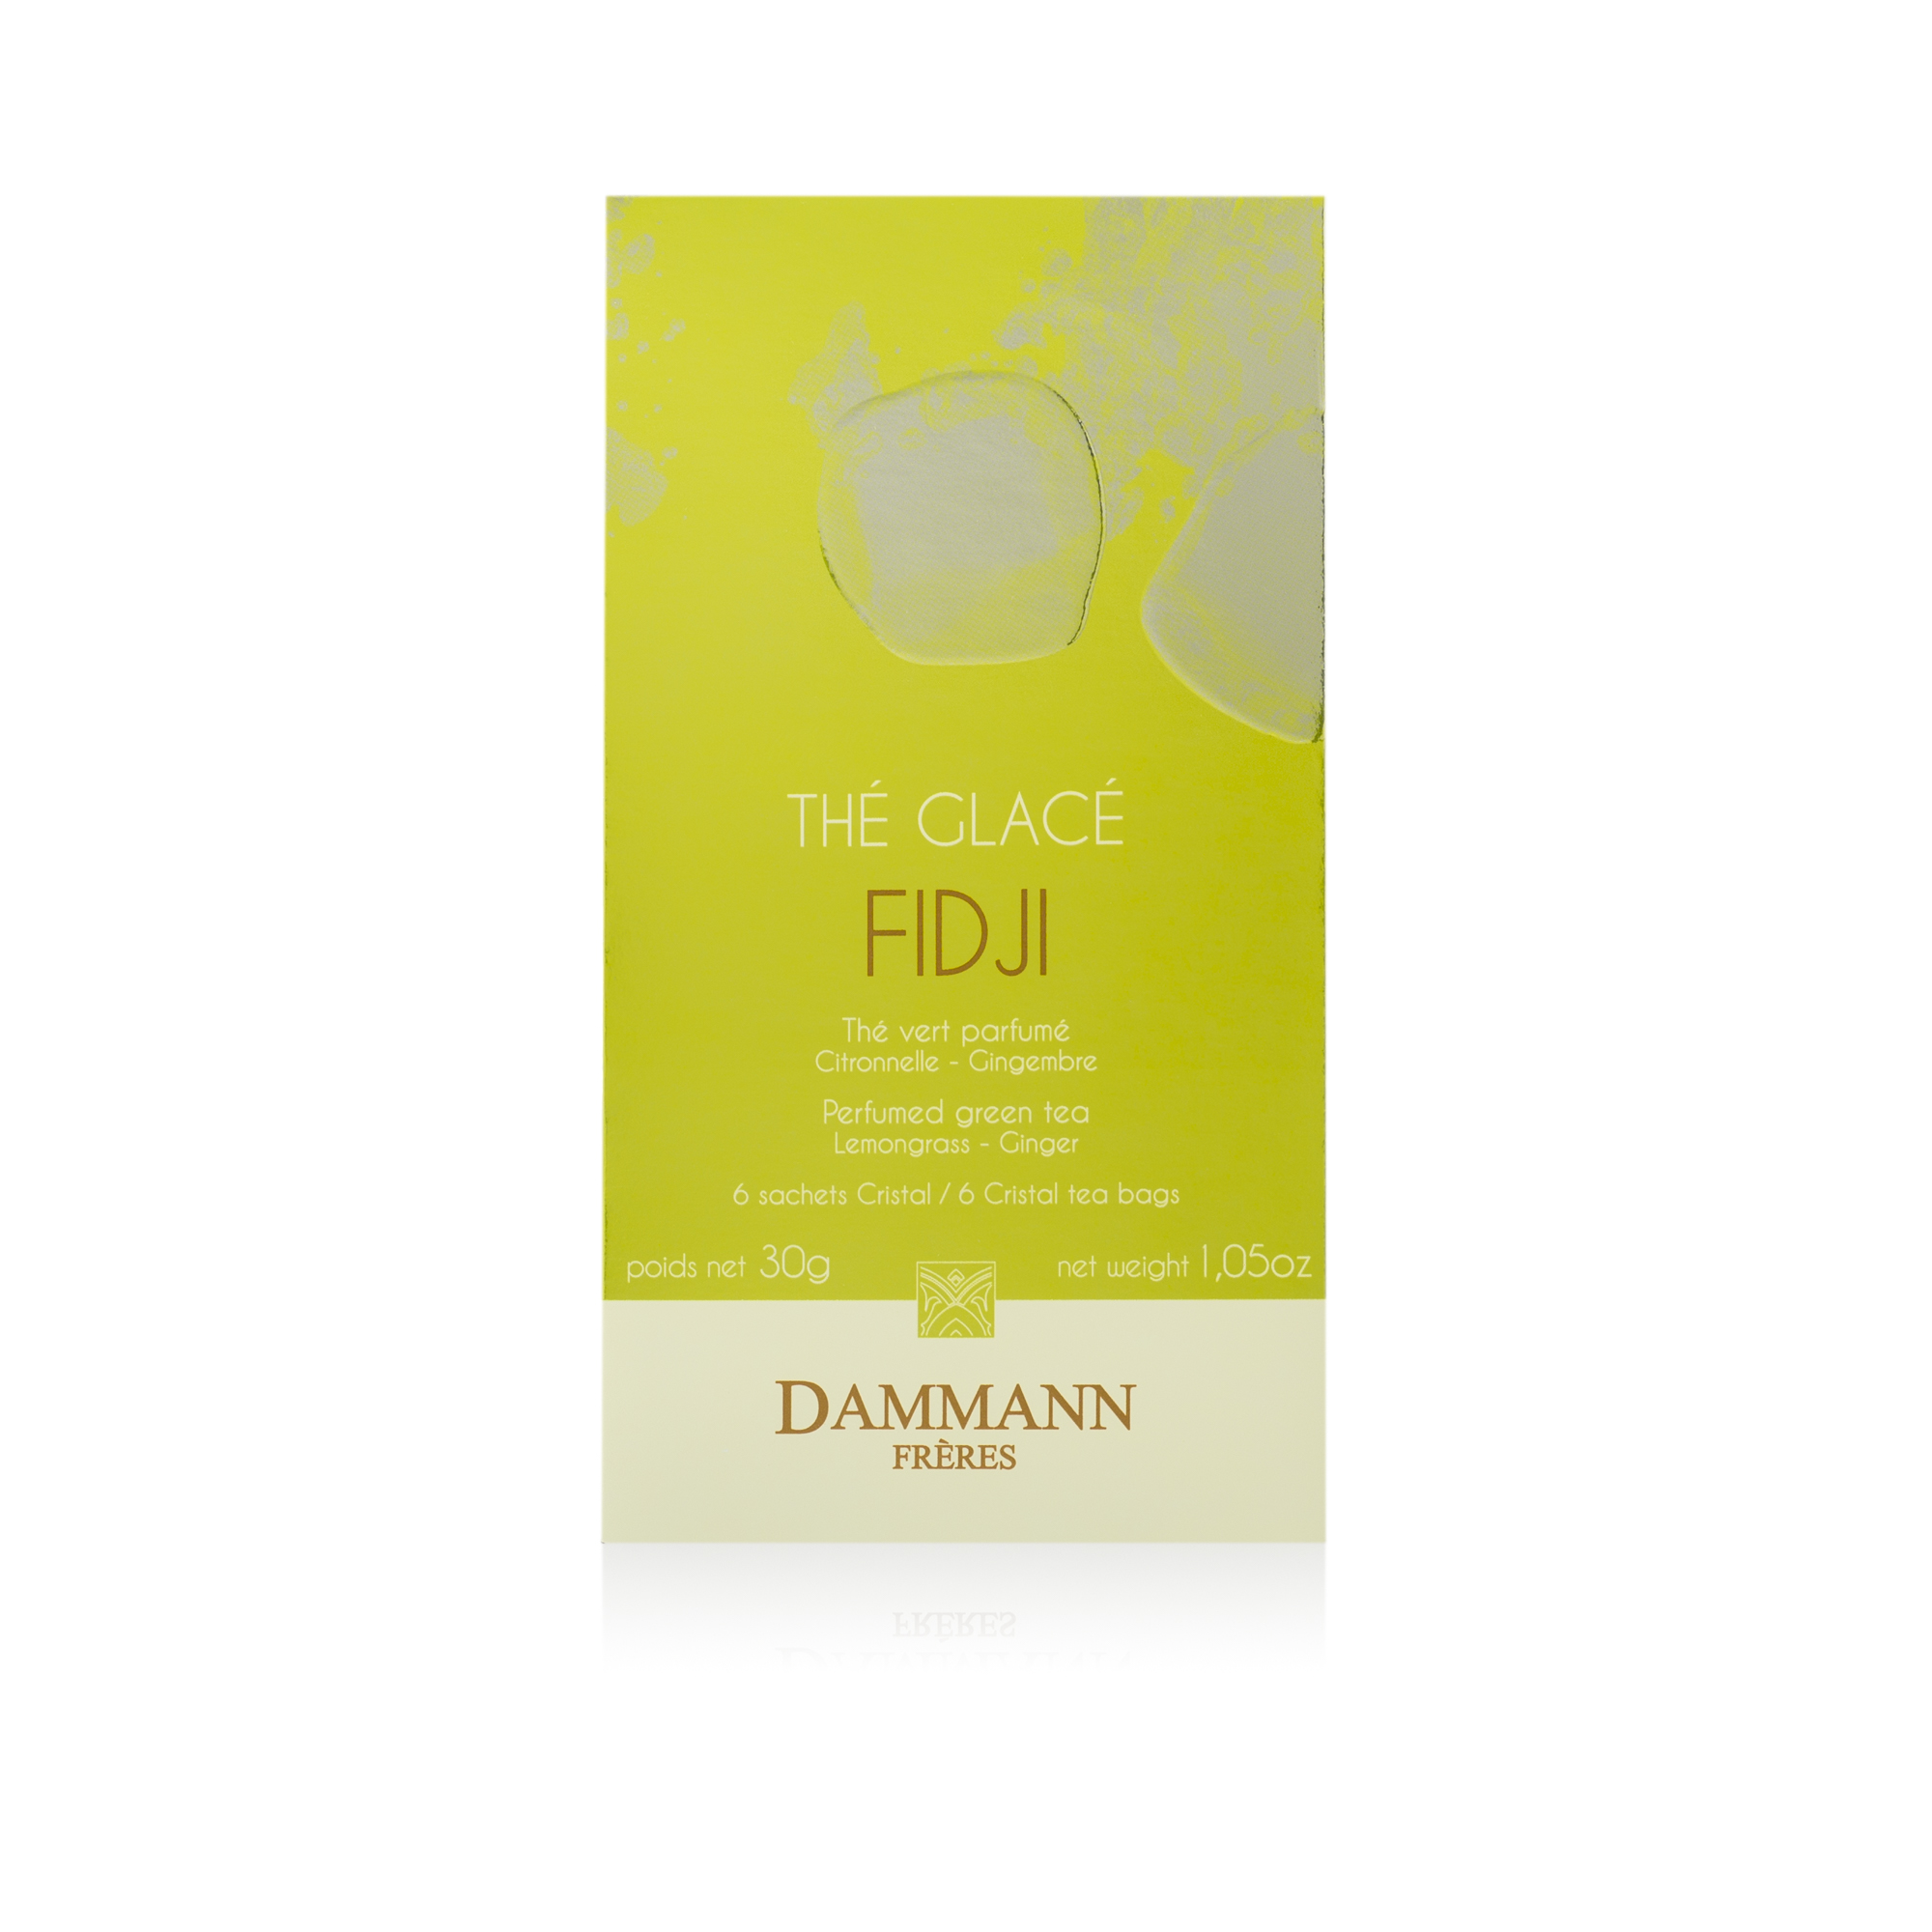 illy Dammann¨ Fidji Iced Tea - 6 Sachets